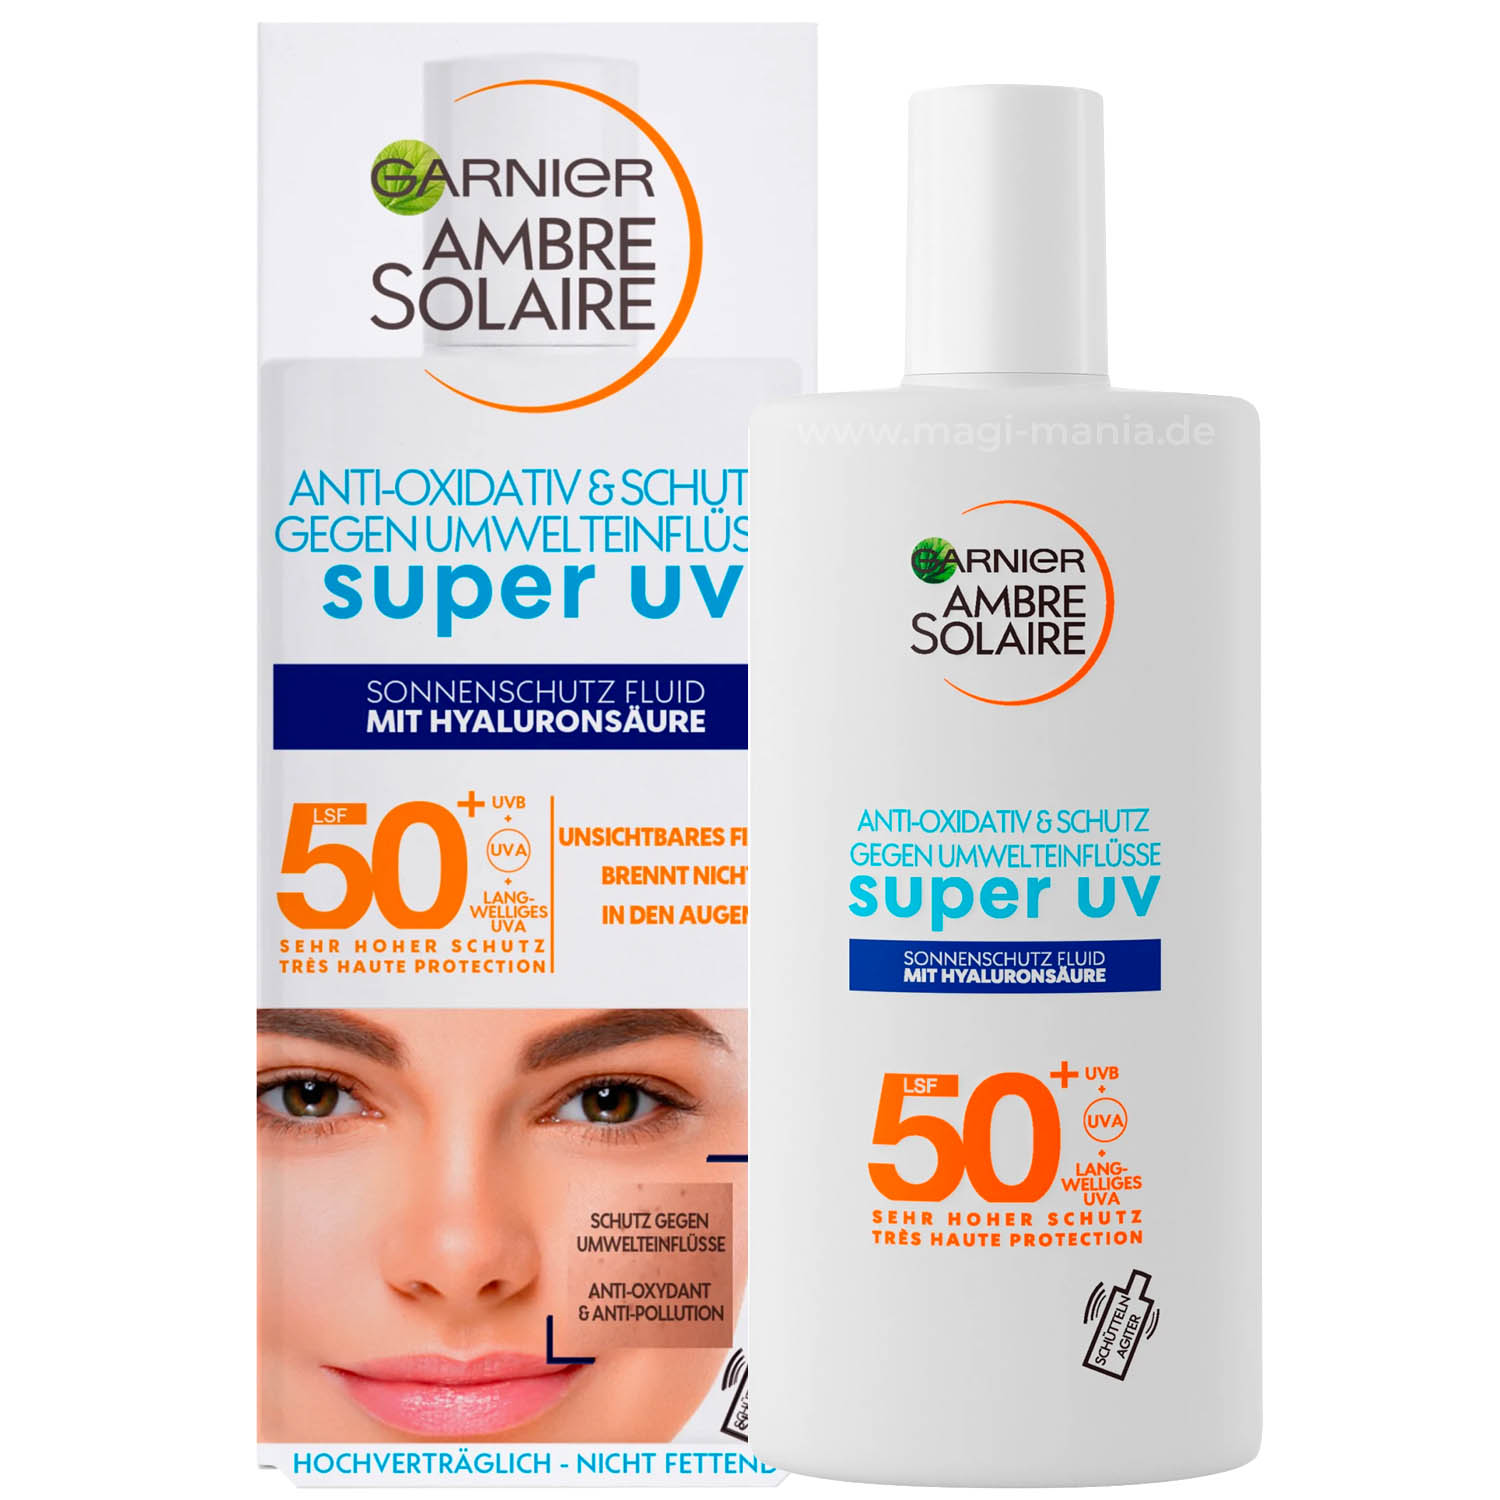 GARNIER AMBRE SOLAIRE Super UV Sonnenschutz-Fluid SPF 50 Anti-oxidativ LRP Shaka Dupe Alternative La Roche-Posay Sonnencreme kaufen bestellen